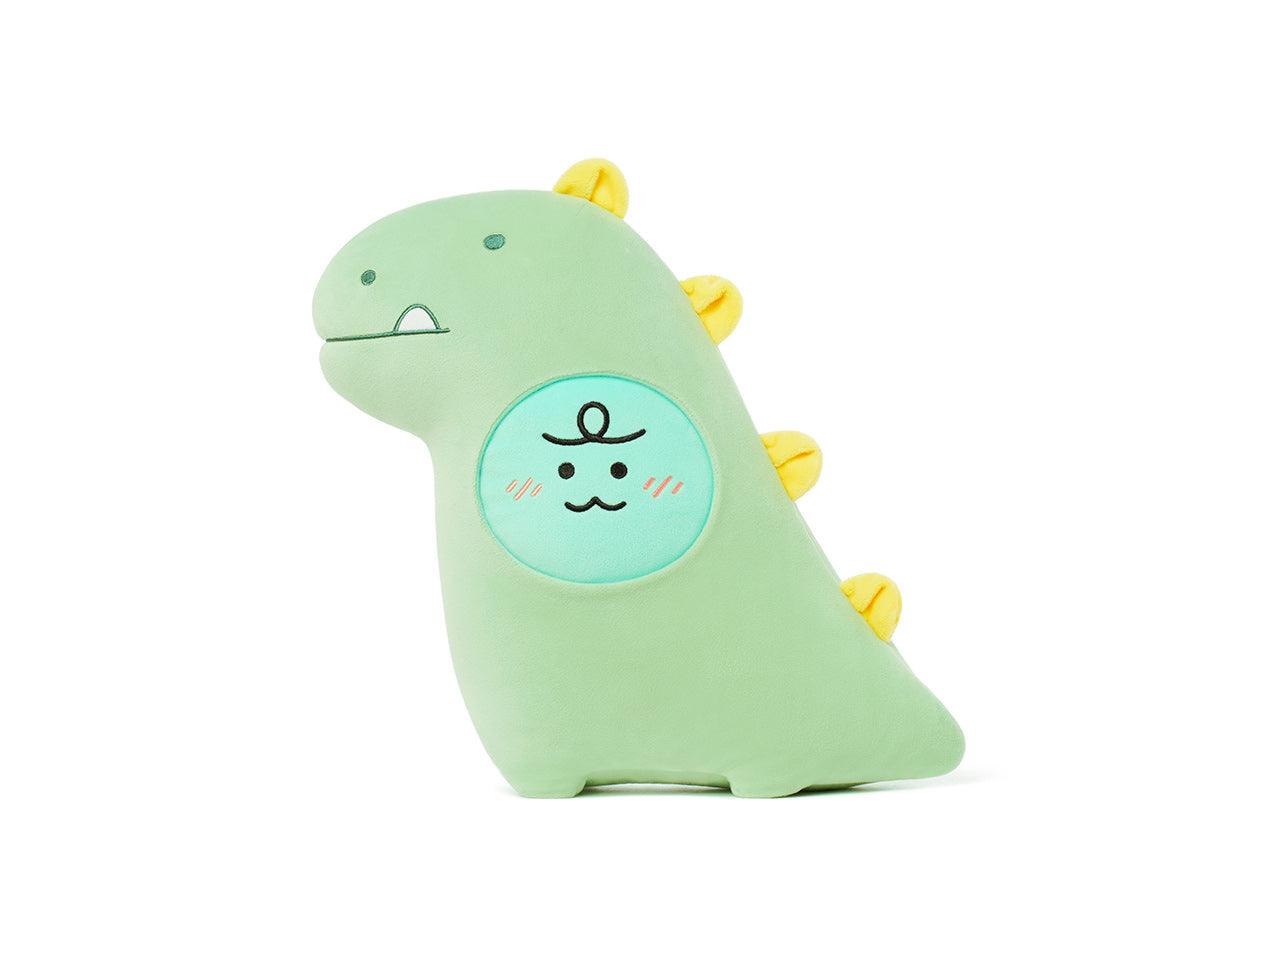 Kakao Friends Jordy Dinosaur Jordy Soft Plush Toy 恐龍抱枕